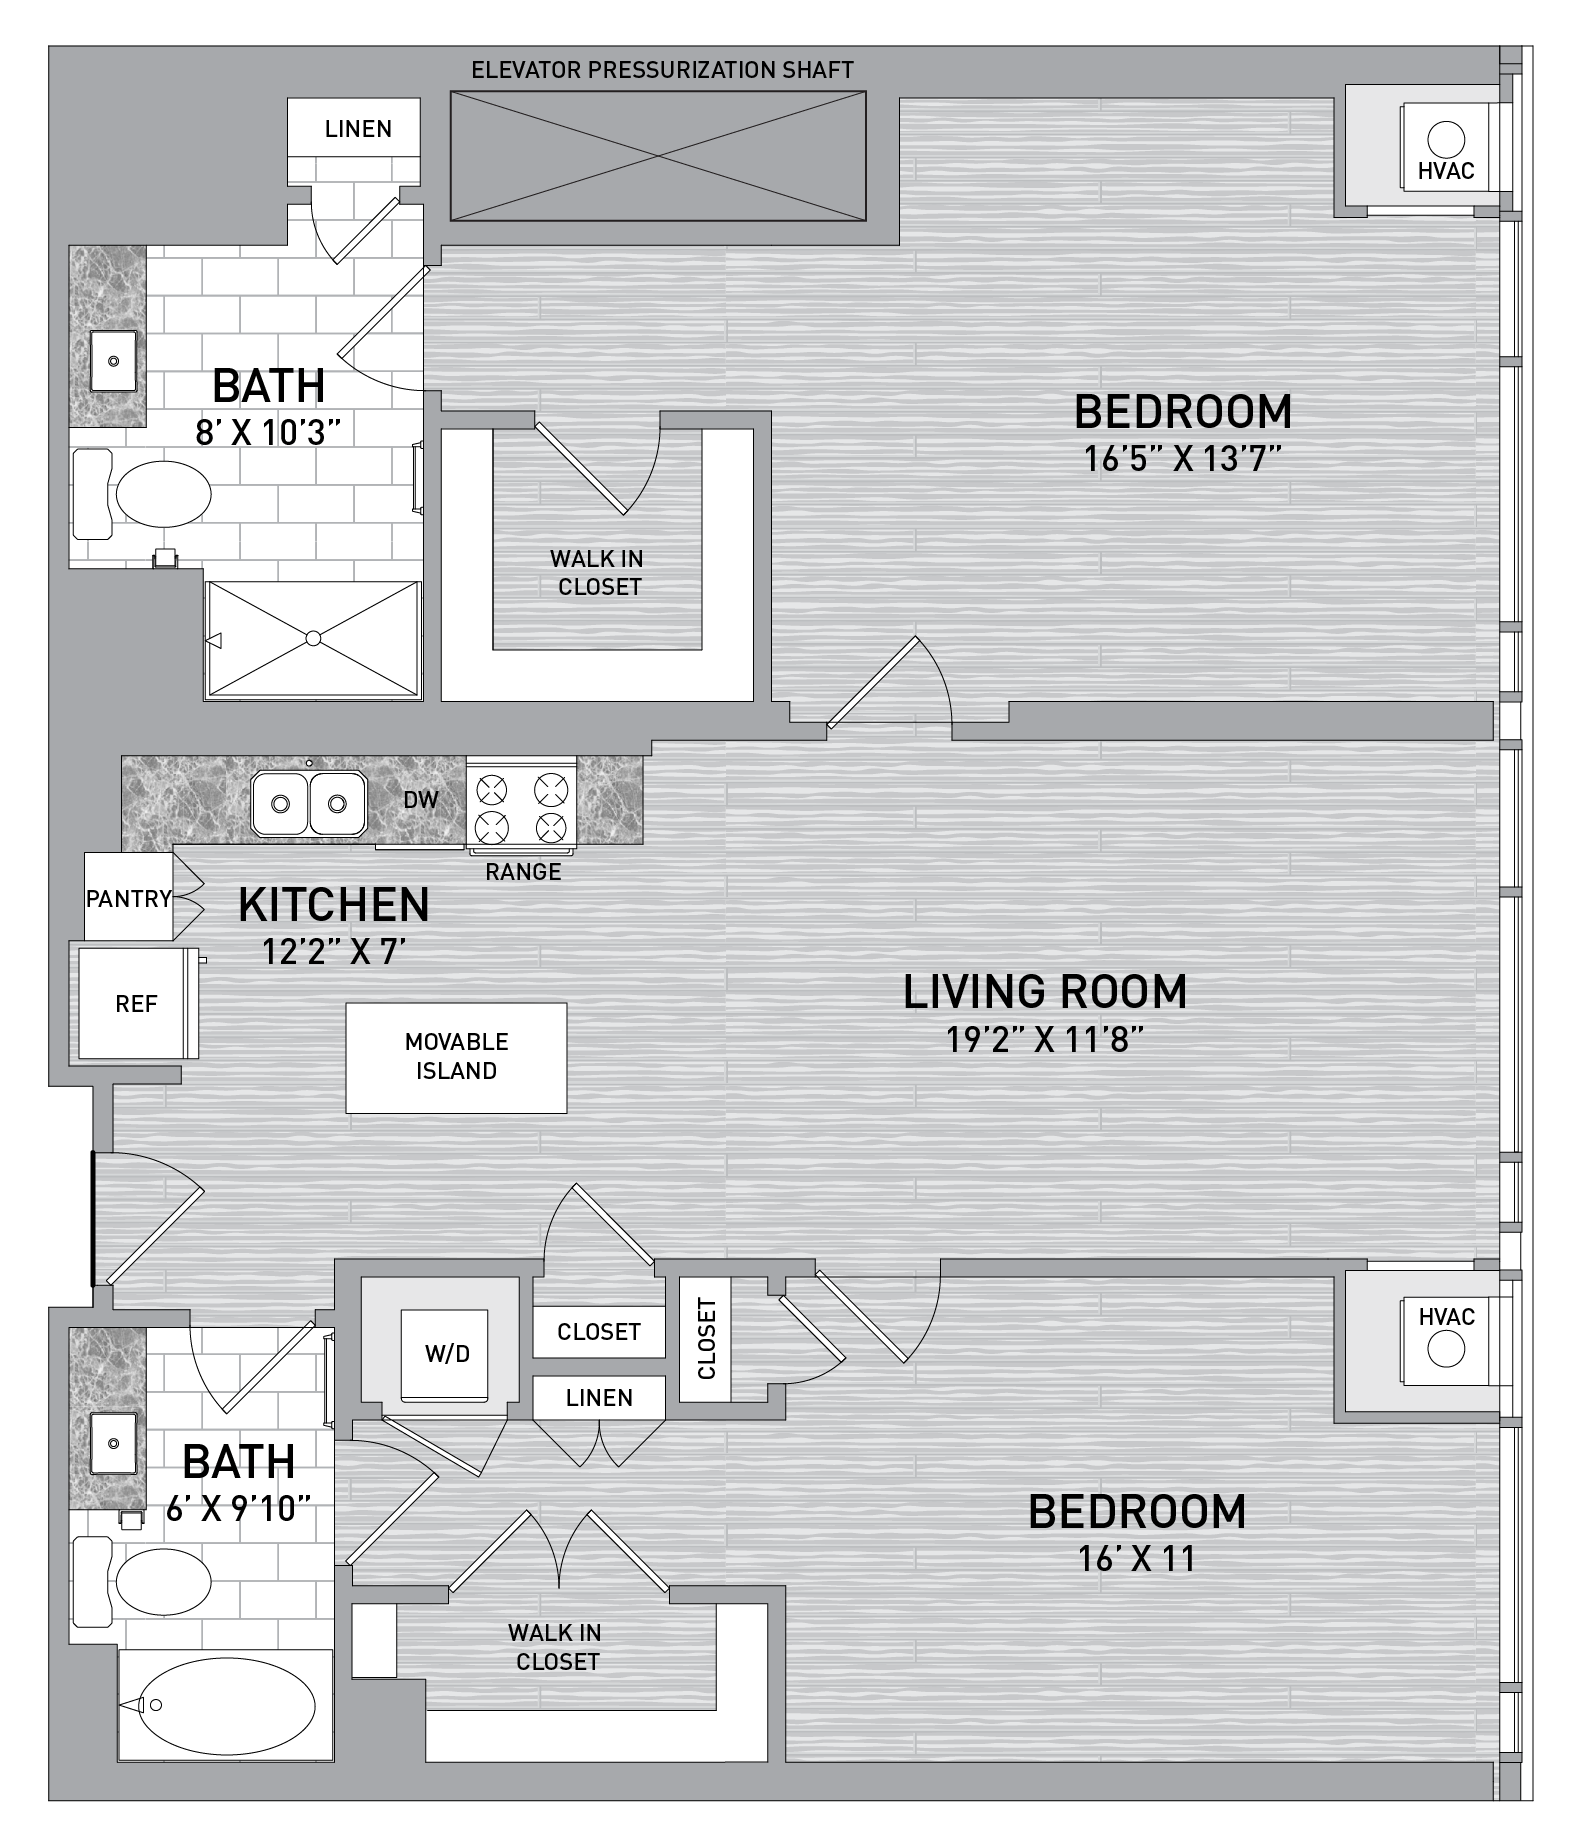 floorplan image of unit id 0605